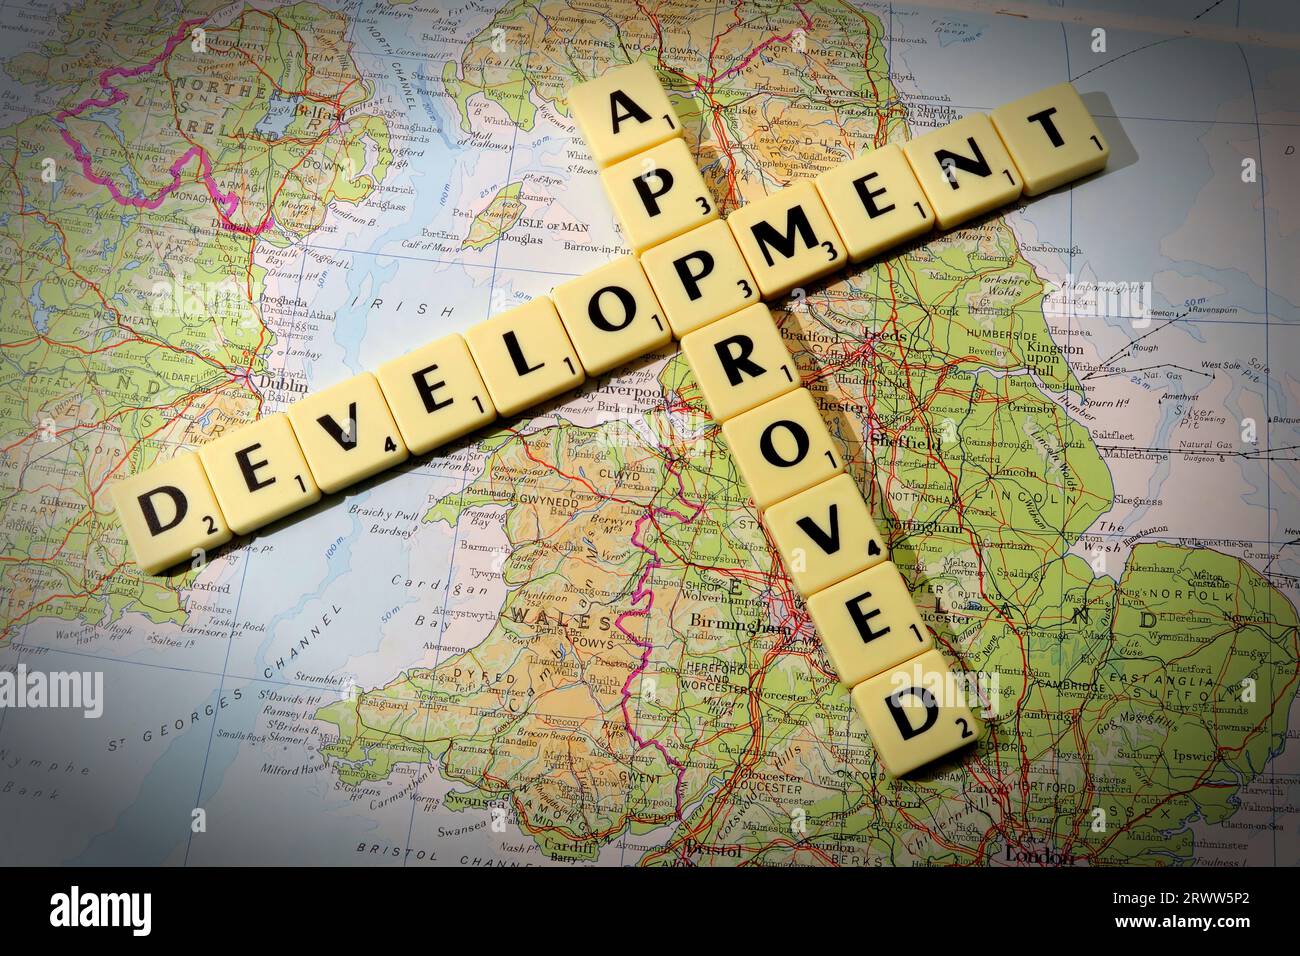 Développement approuvé épelé en lettres scrabble et mots sur une carte de l'Angleterre - développement local et contrôle de construction Banque D'Images